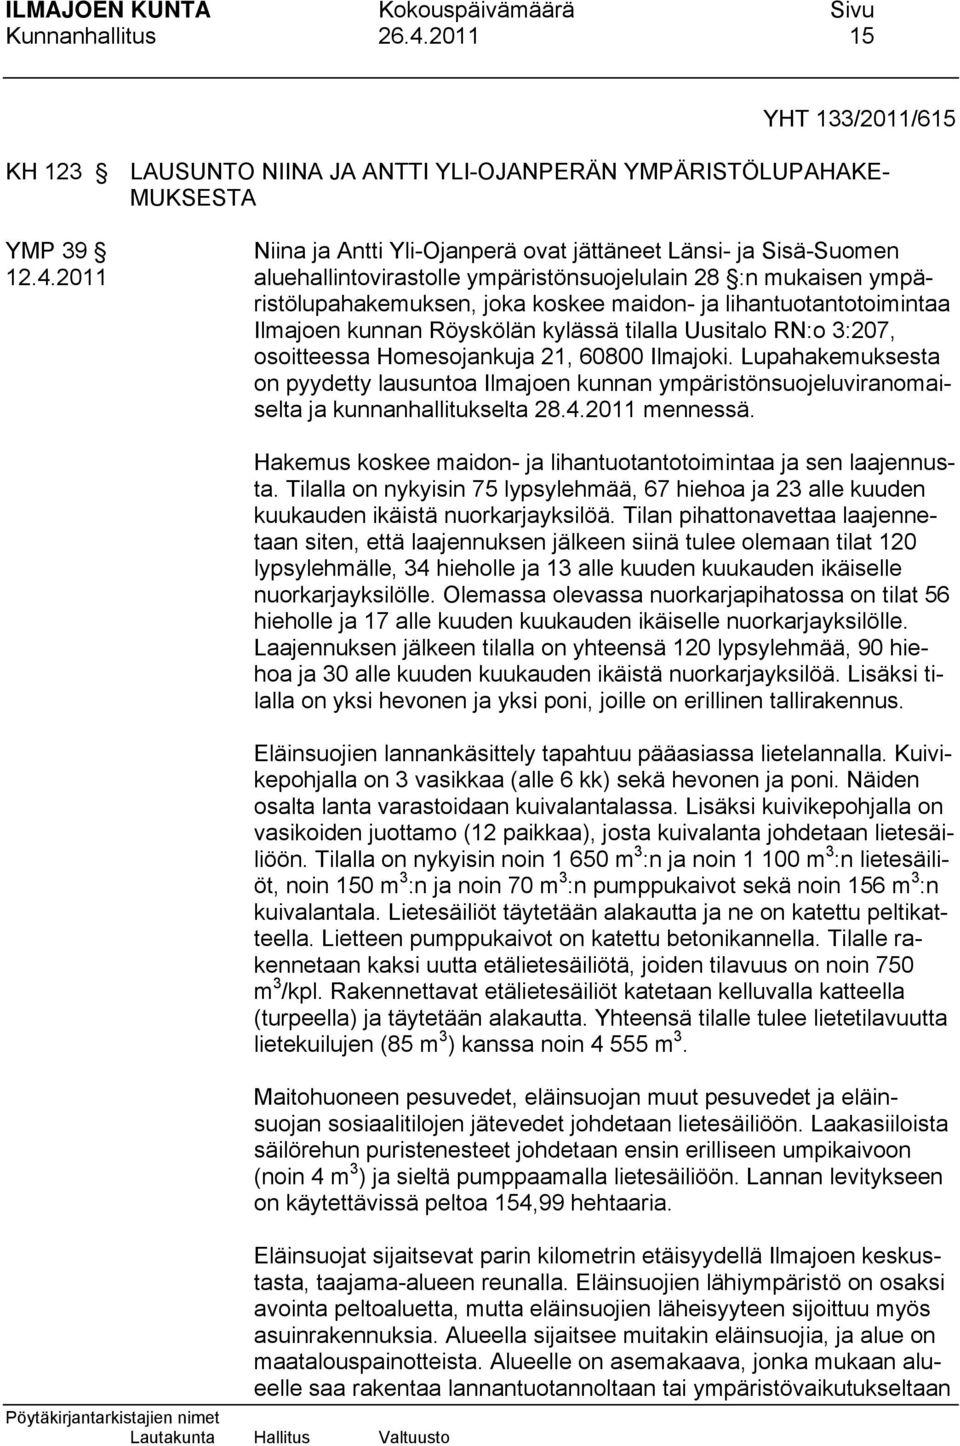 2011 aluehallintovirastolle ympäristönsuojelulain 28 :n mukaisen ympäristölupahakemuksen, joka koskee maidon- ja lihantuotantotoimintaa Ilmajoen kunnan Röyskölän kylässä tilalla Uusitalo RN:o 3:207,